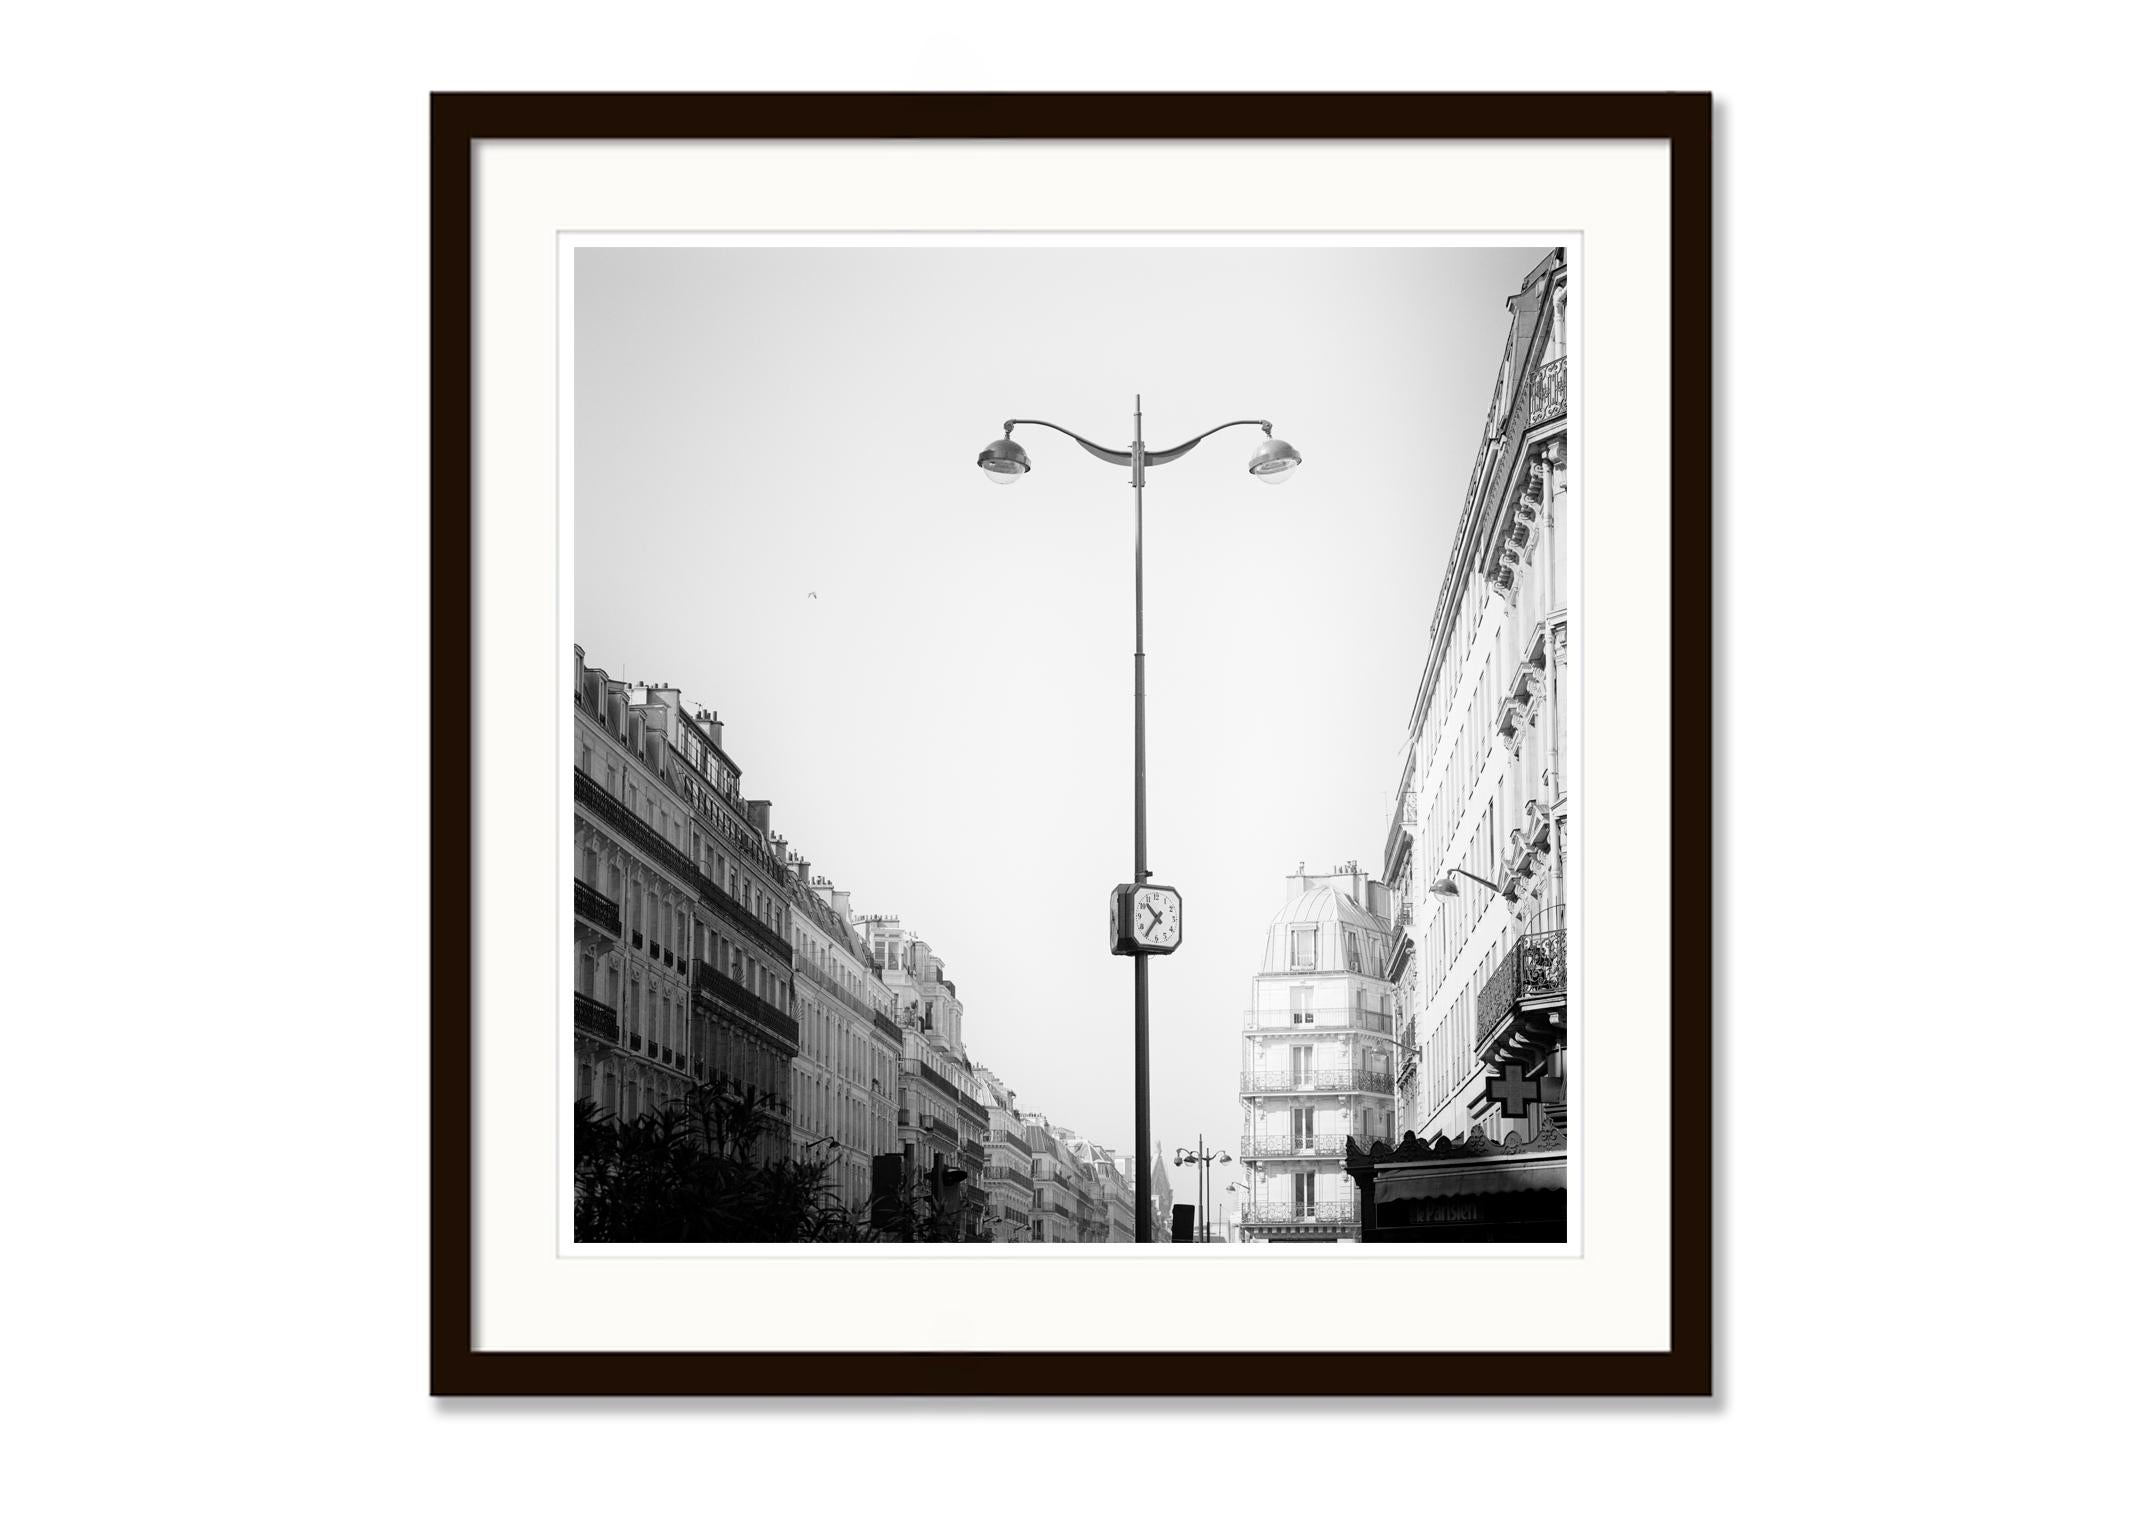 SILVERFINEART - Schwarze und weiße Landschaftsfotografie. Limitierte Auflage von 9 Exemplaren, hergestellt vom originalen 6x6cm Mittelformat-Schwarzweiß-Negativfilm und gedruckt als archivtauglicher Pigmenttintenabzug auf Fine Art Papier.